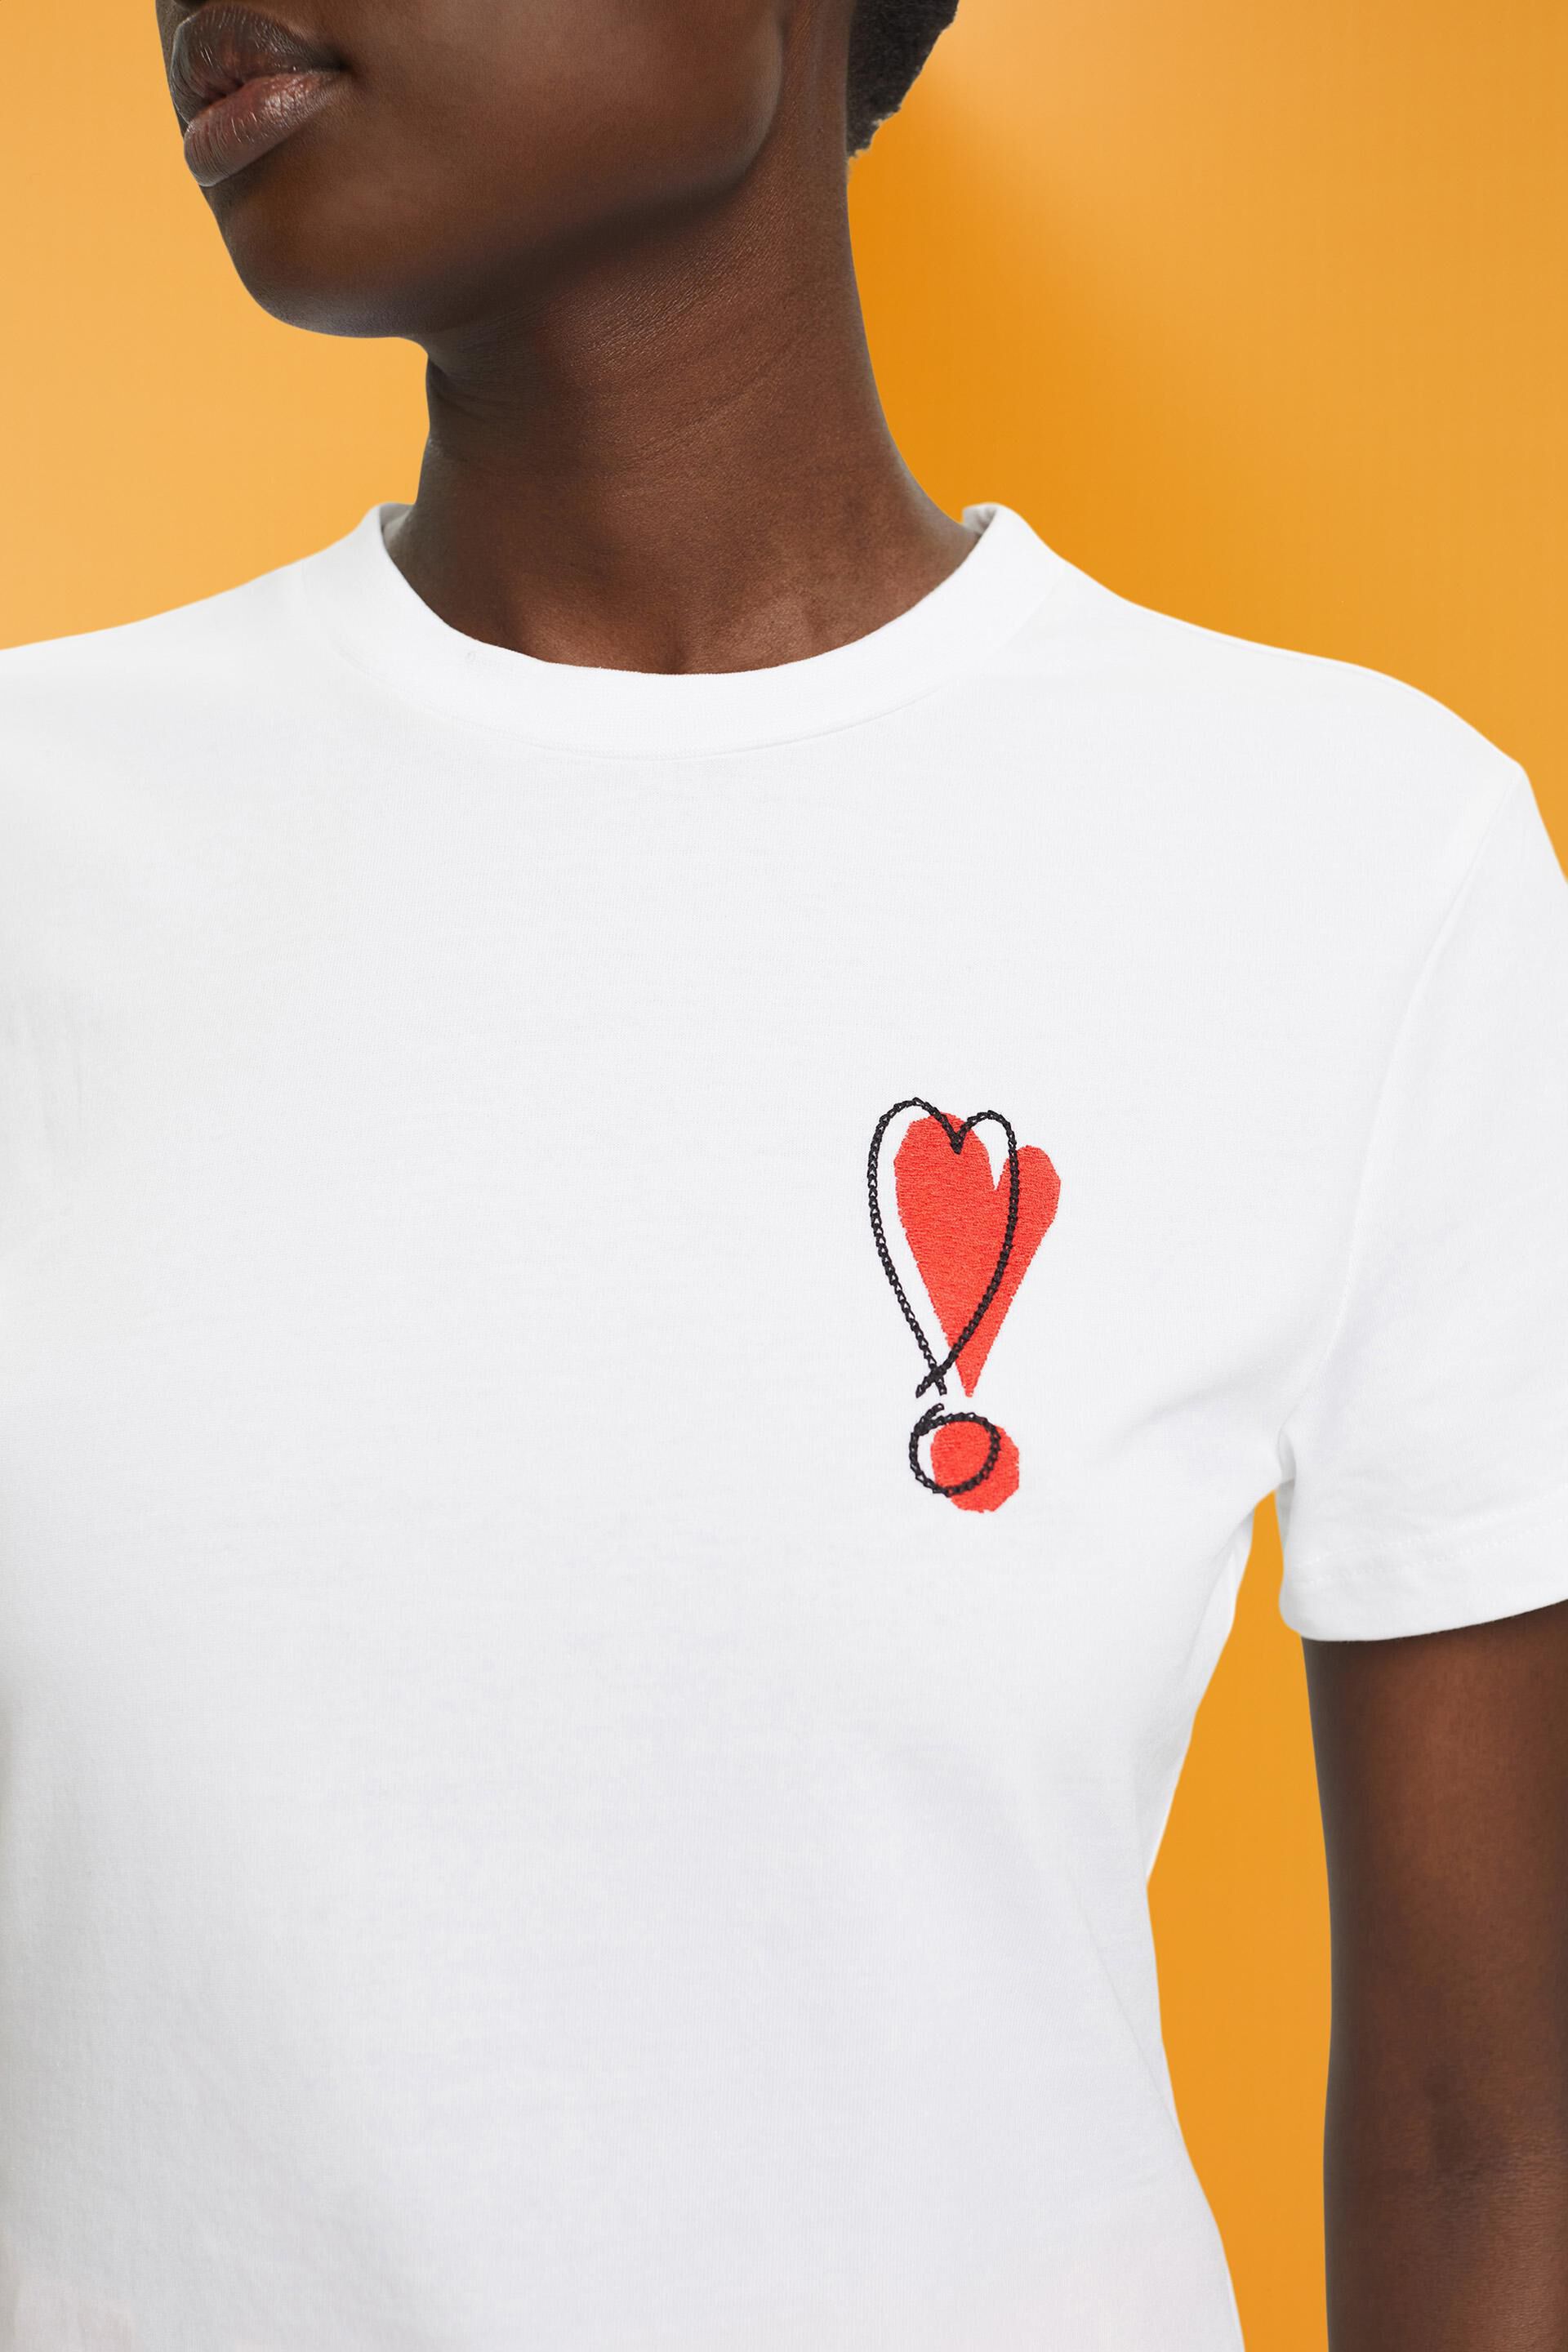 Esprit Damen Baumwoll-T-Shirt mit Herzmotiv gesticktem